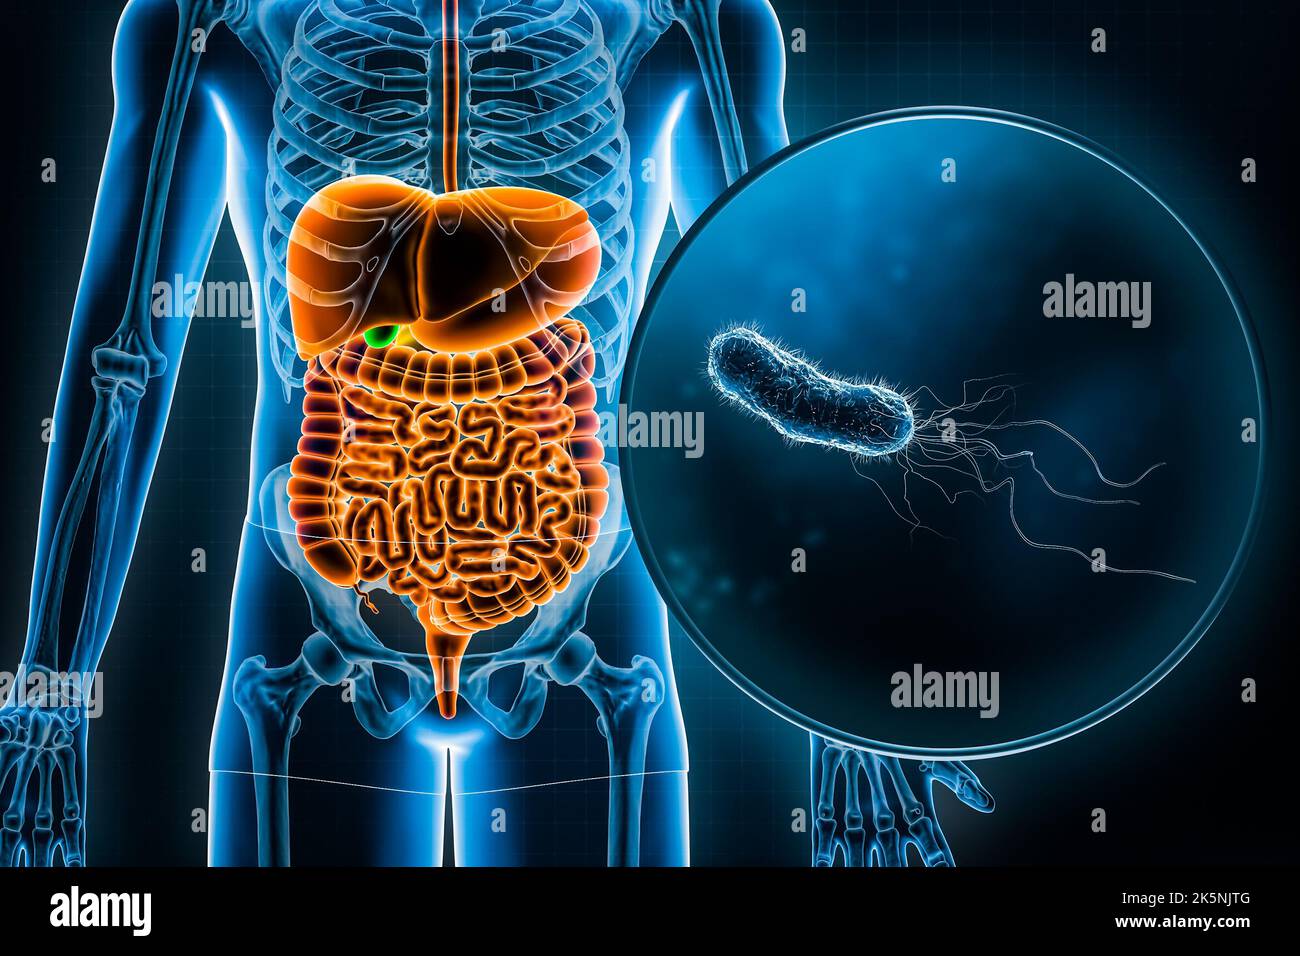 Menschliches Verdauungssystem und Magen-Darm-Trakt und E. coli-Bakterien 3D Rendering Illustration. Anatomie, Medizin, Biologie, Infektionskrankheit, Gastri Stockfoto